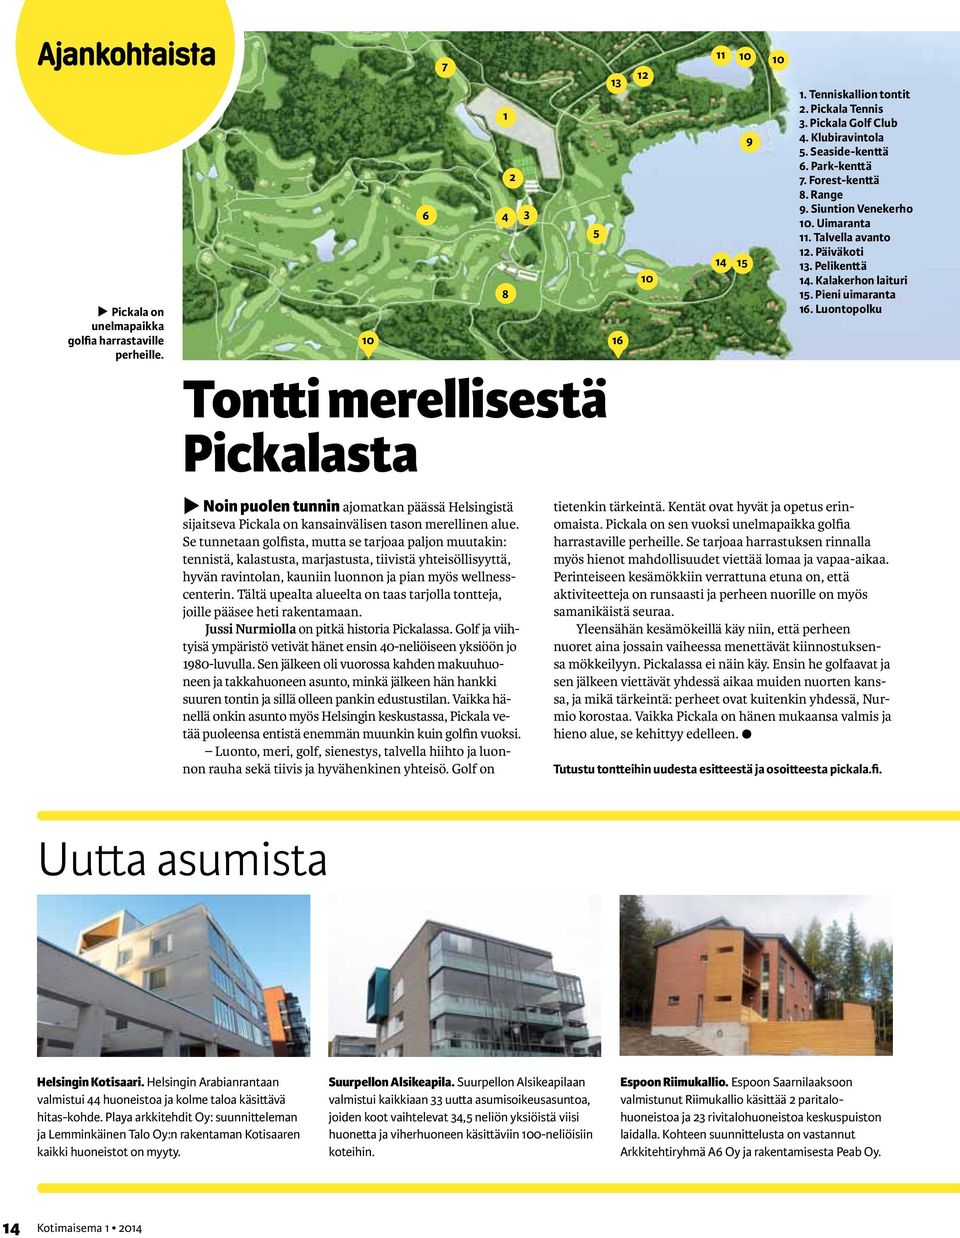 Tältä upealta alueelta on taas tarjolla tontteja, joille pääsee heti rakentamaan. Jussi Nurmiolla on pitkä historia Pickalassa.